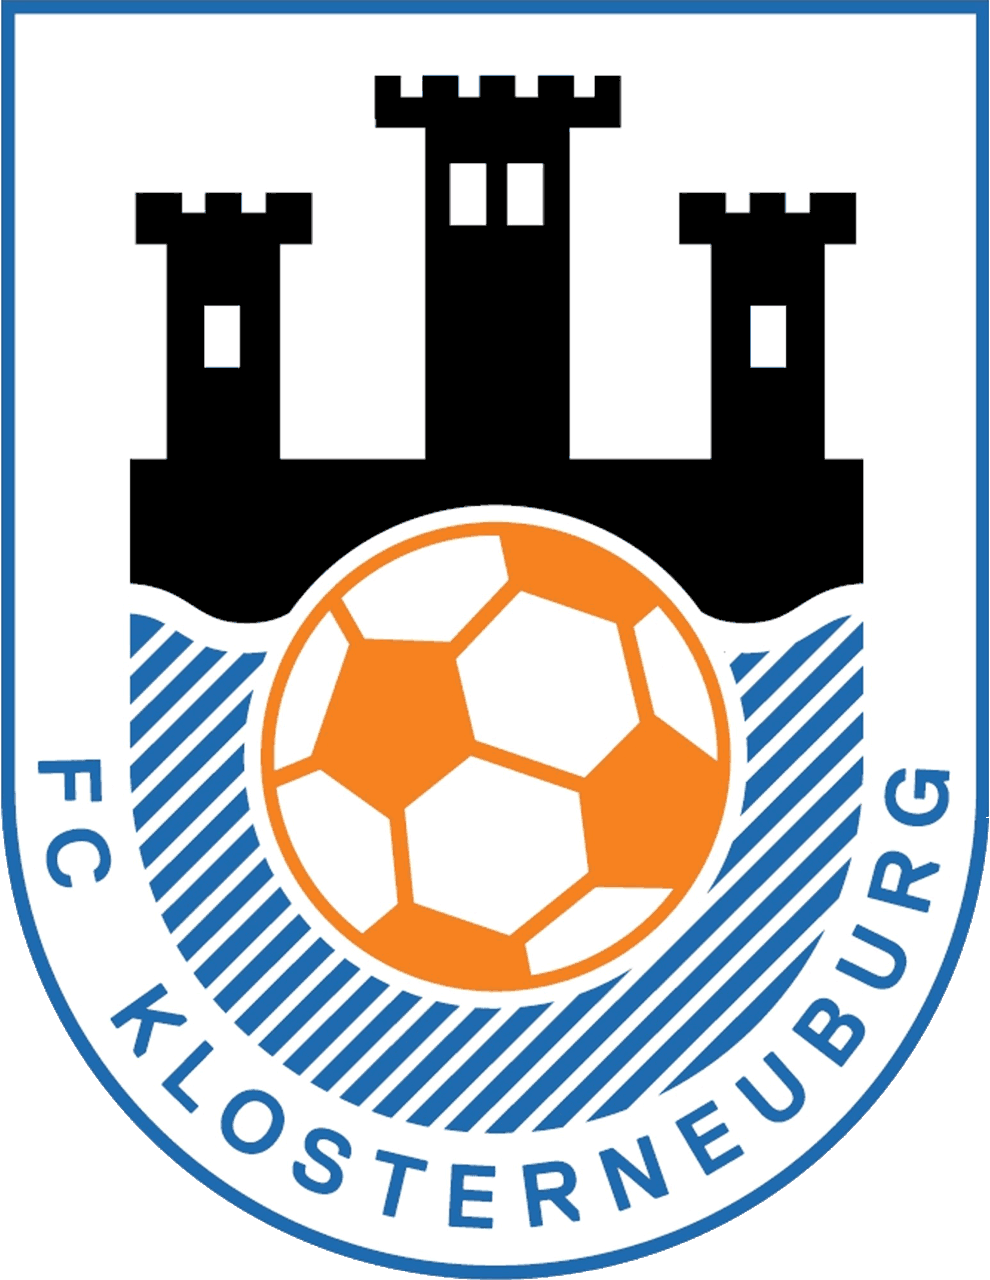 FC-Klosterneuburg Wappen